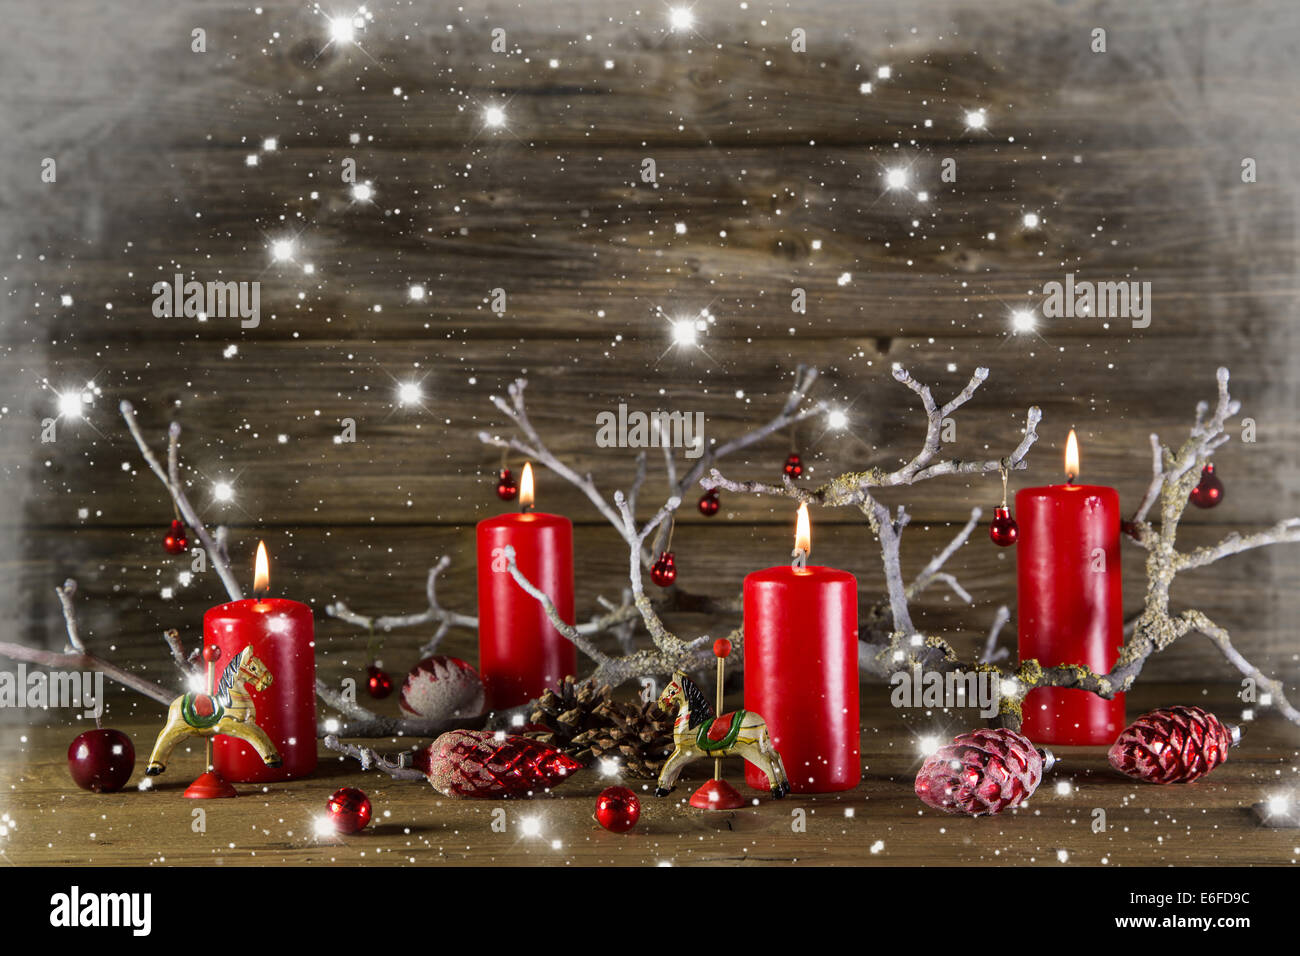 Xmas Dekoration auf hölzernen rustikalen Hintergrund: vier rote brennende  Advent Kerzen. Verschneite Land Stil Rahmen Stockfotografie - Alamy